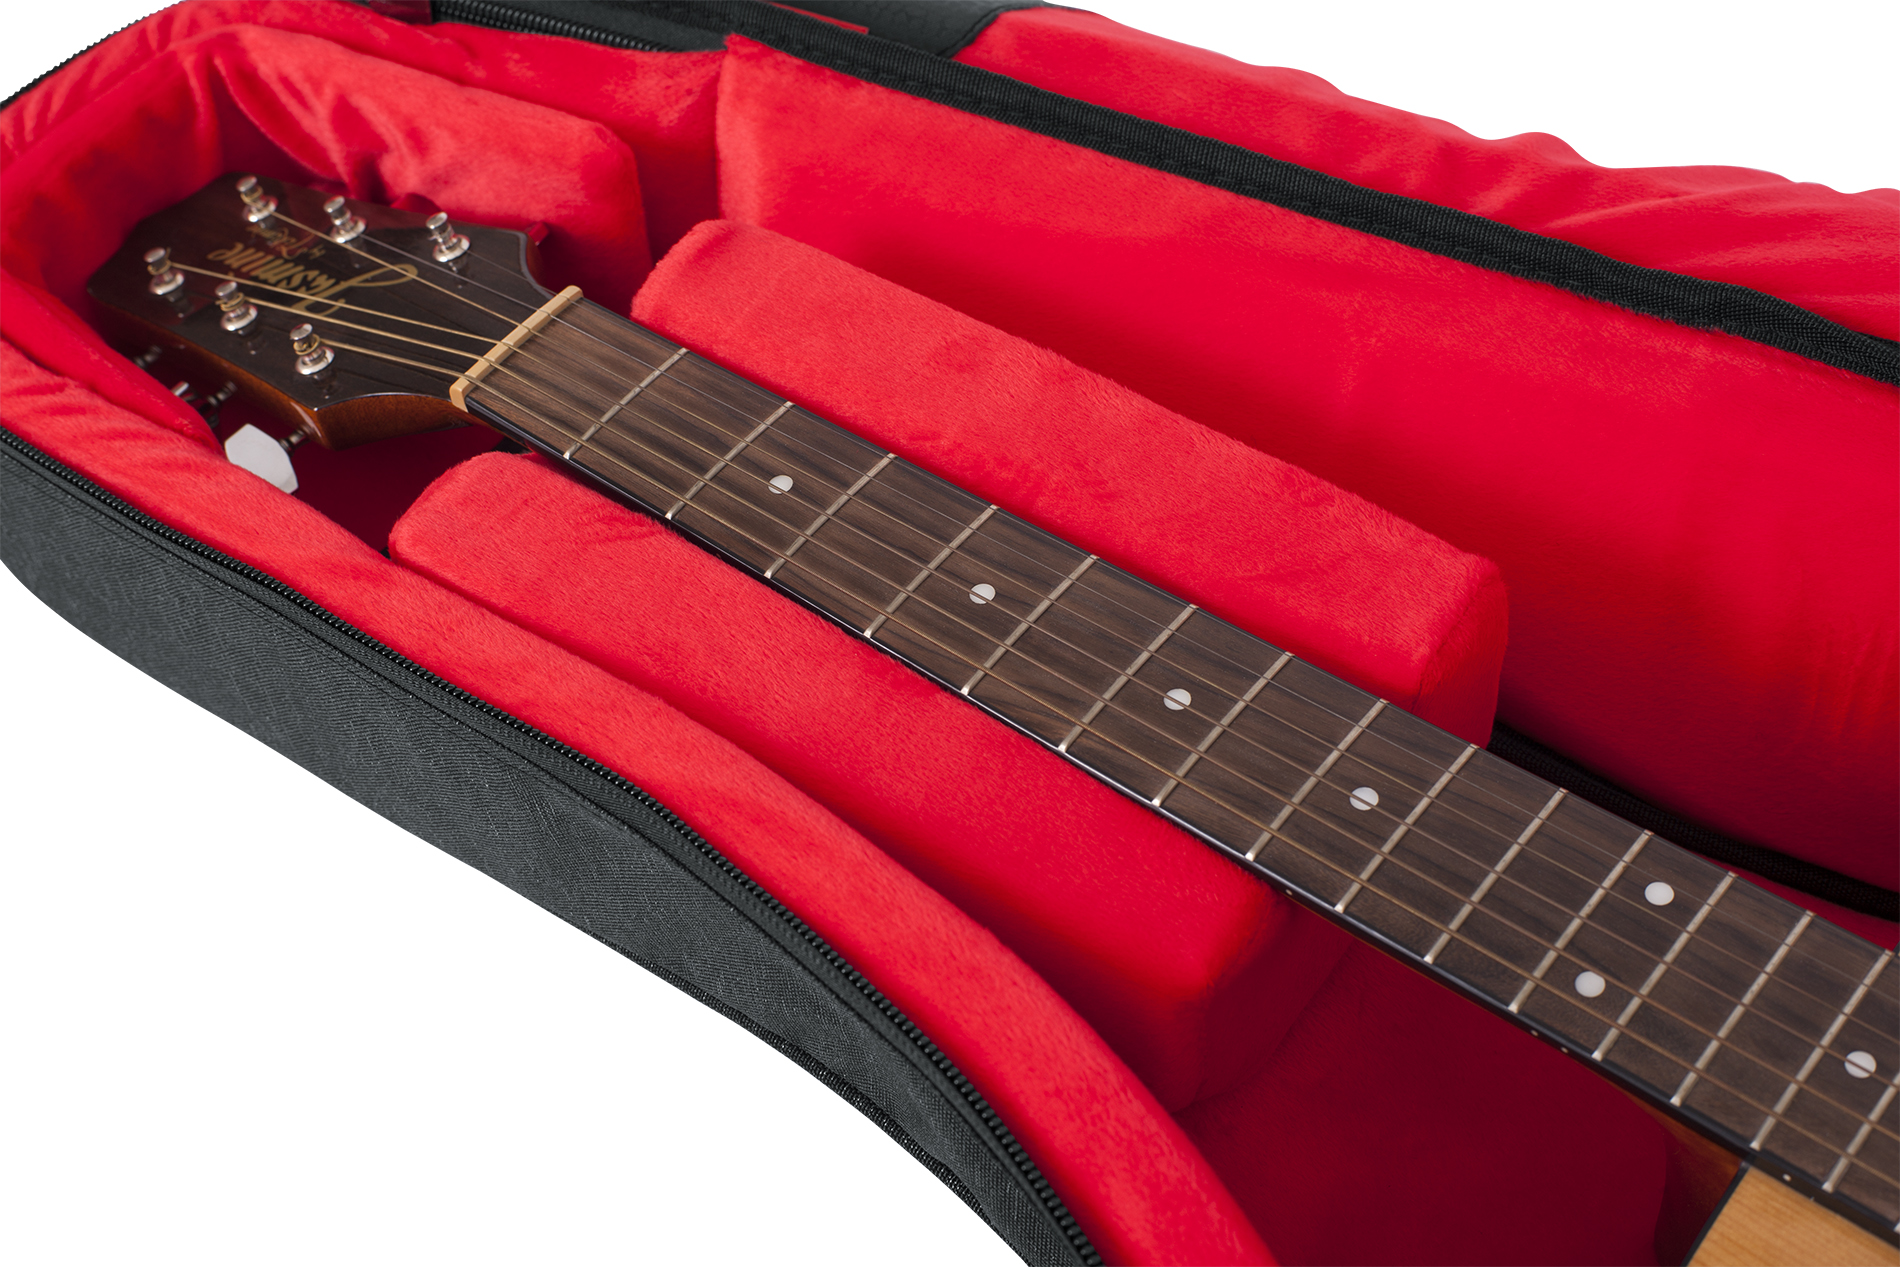 Transit Acoustic Guitar Bag; Charcoal-GT-ACOUSTIC-BLK